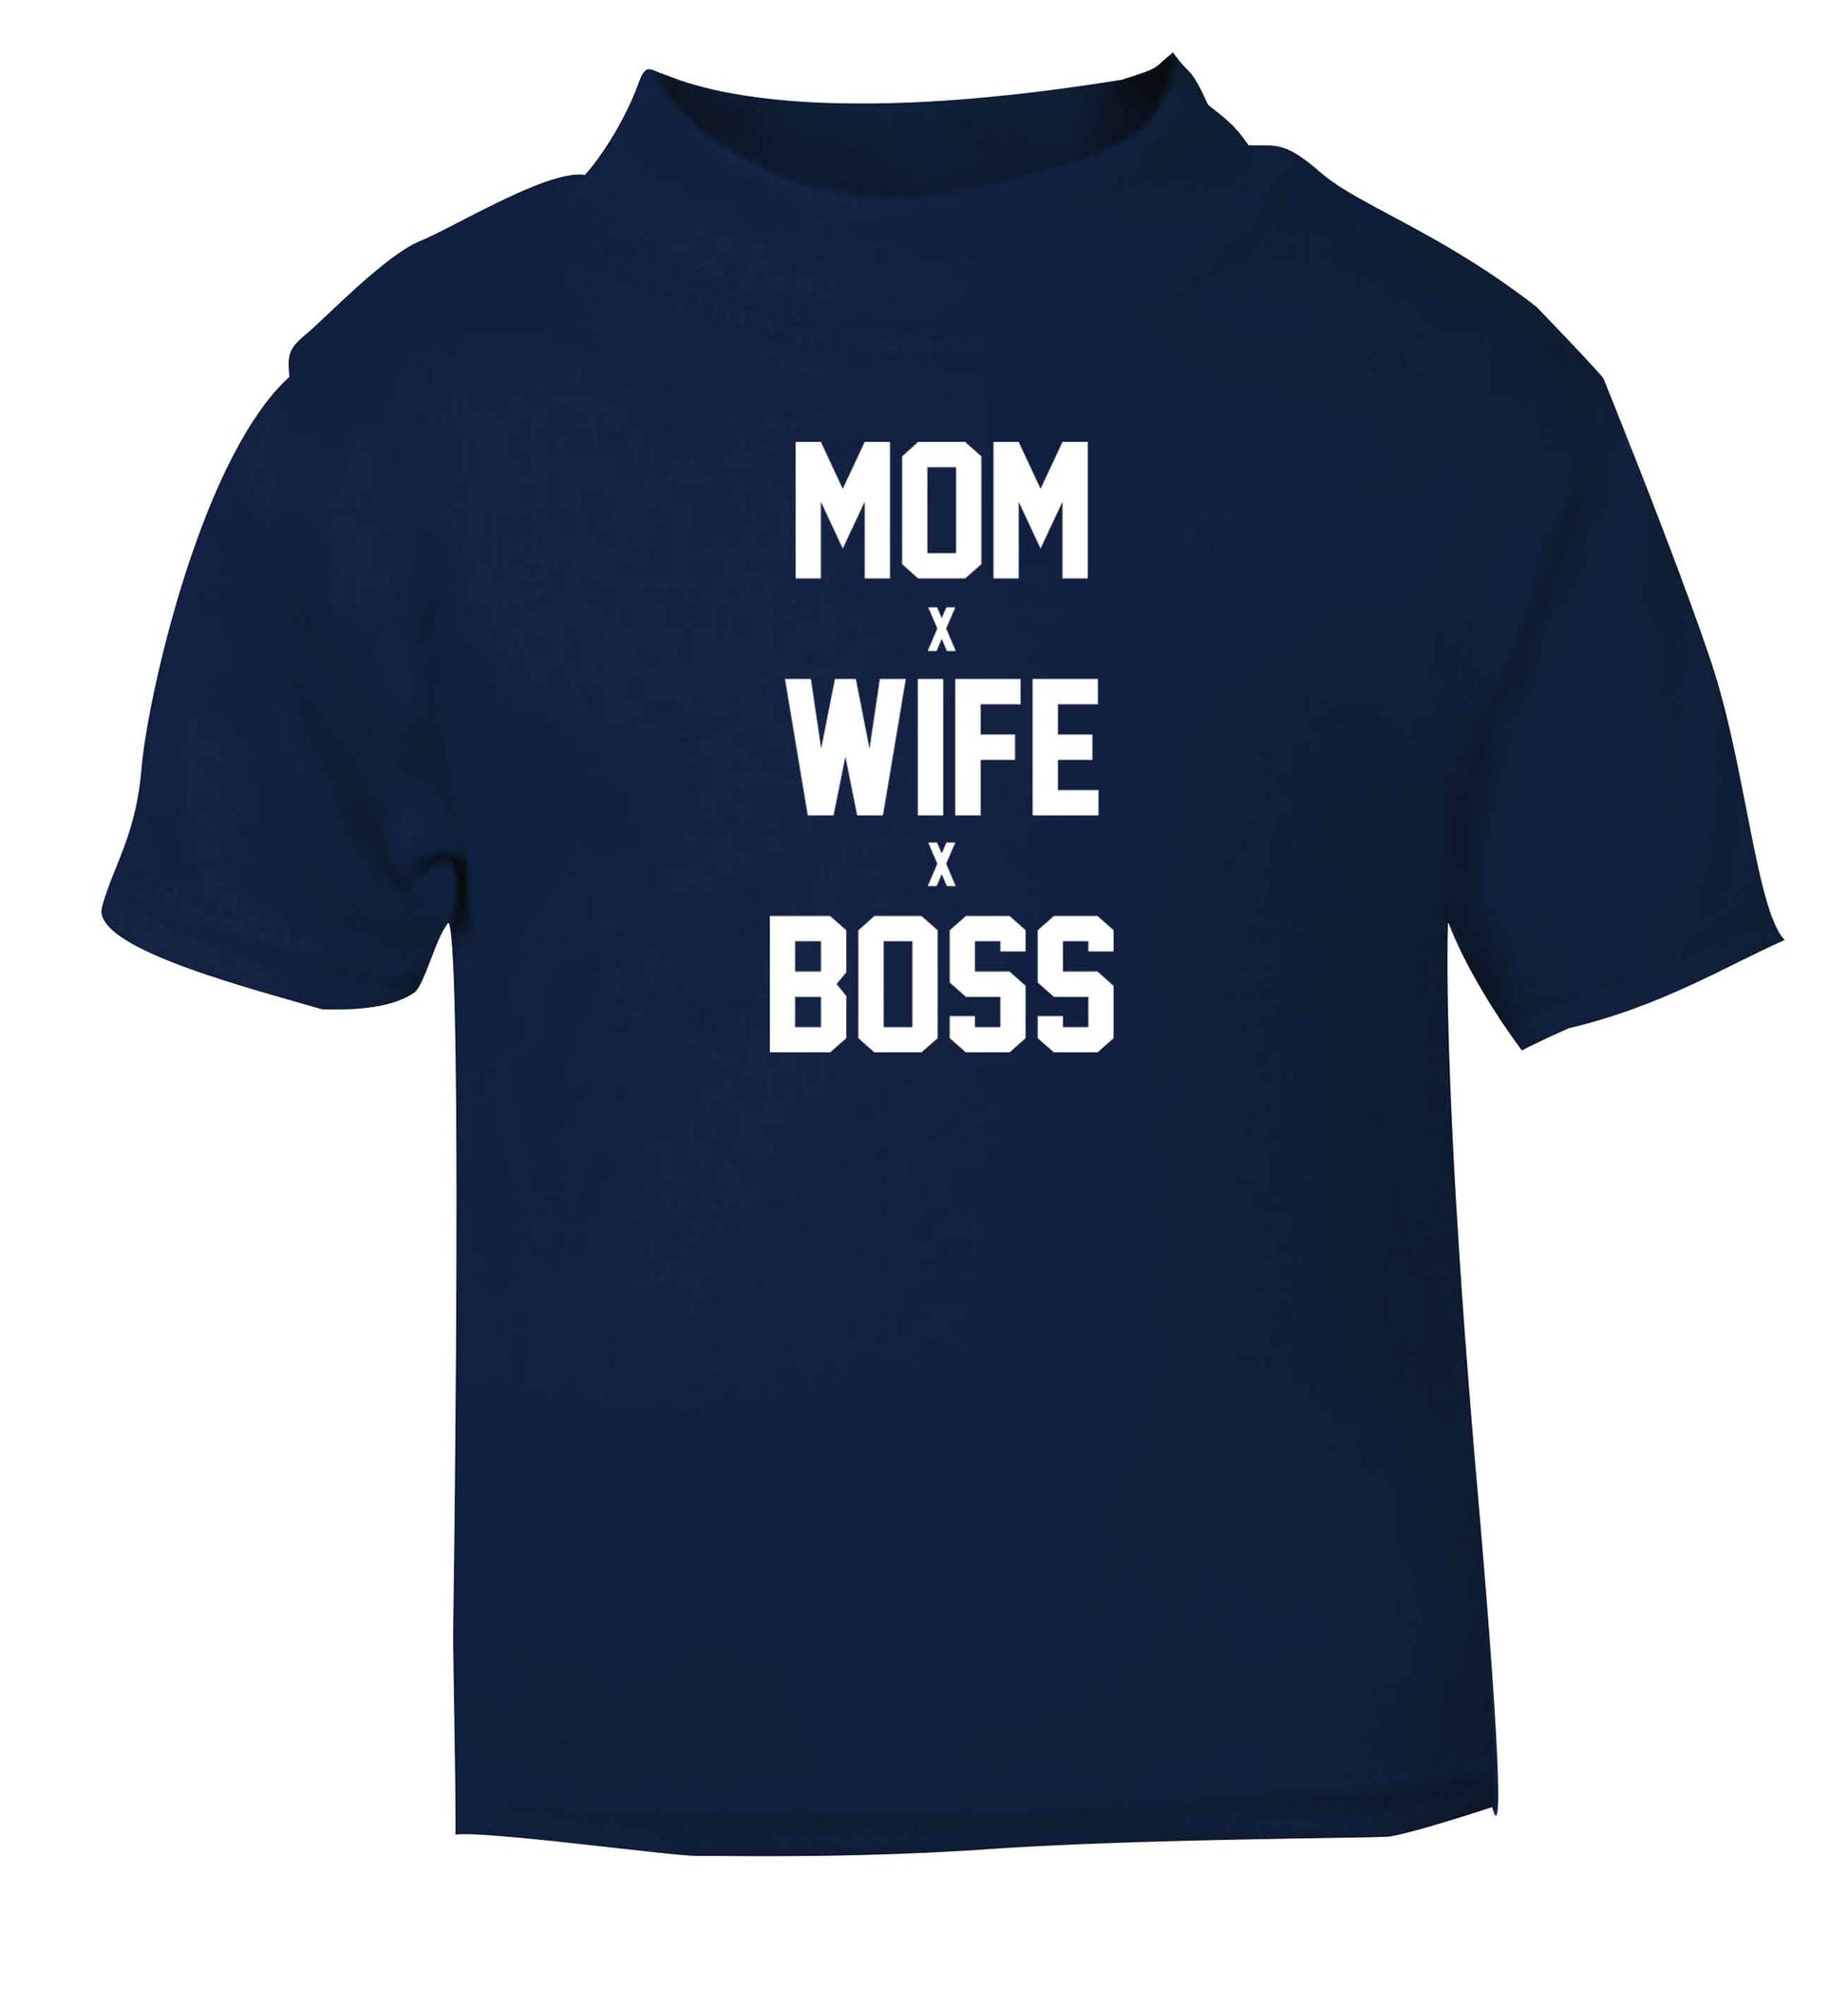 Mum wife boss navy baby toddler Tshirt 2 Years